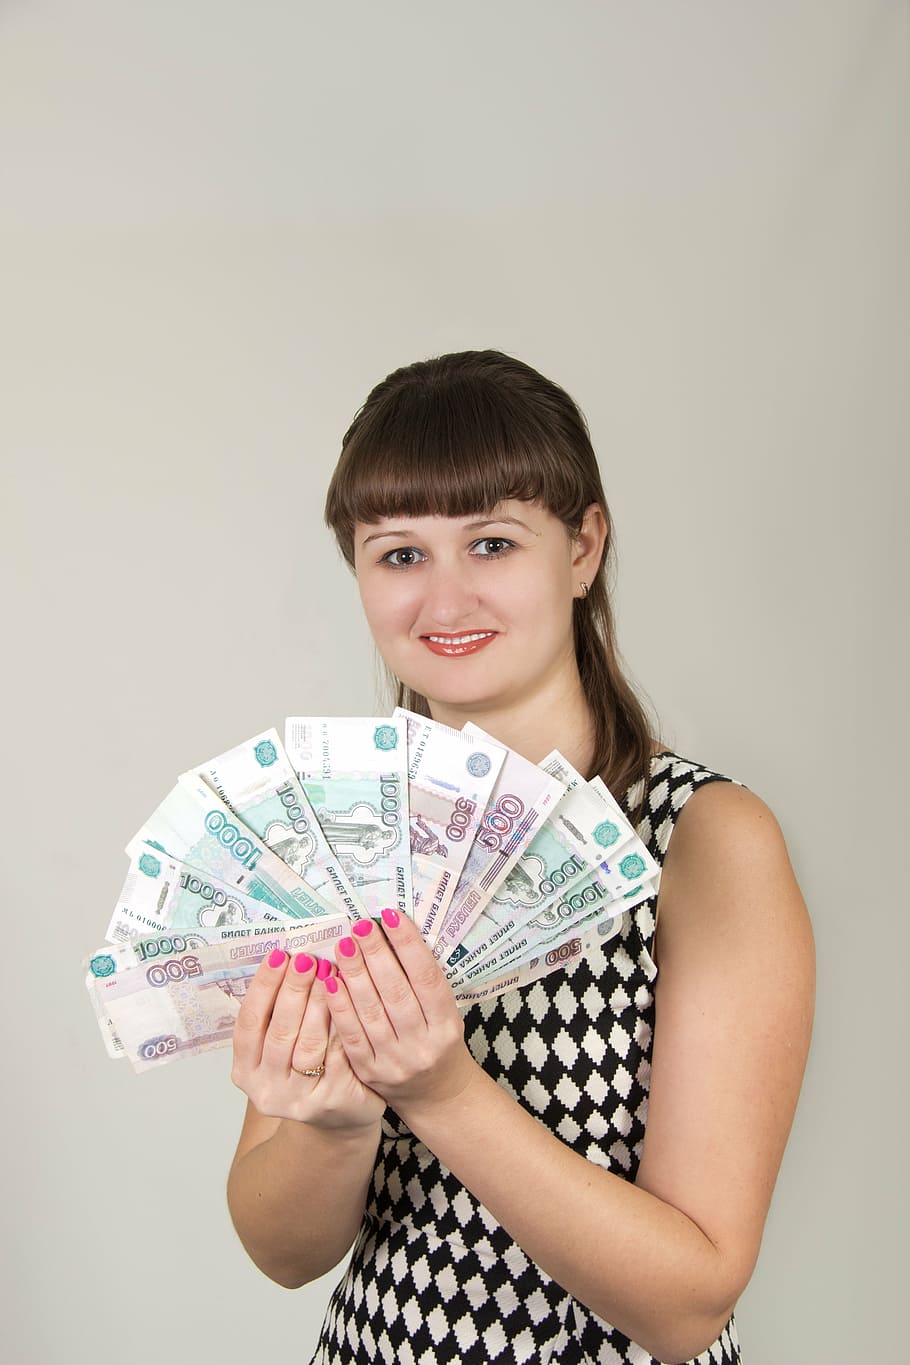 wanita, memegang, kipas, uang kertas rubel rusia, gadis, uang, menang, di tangan, menunjukkan, bahagia